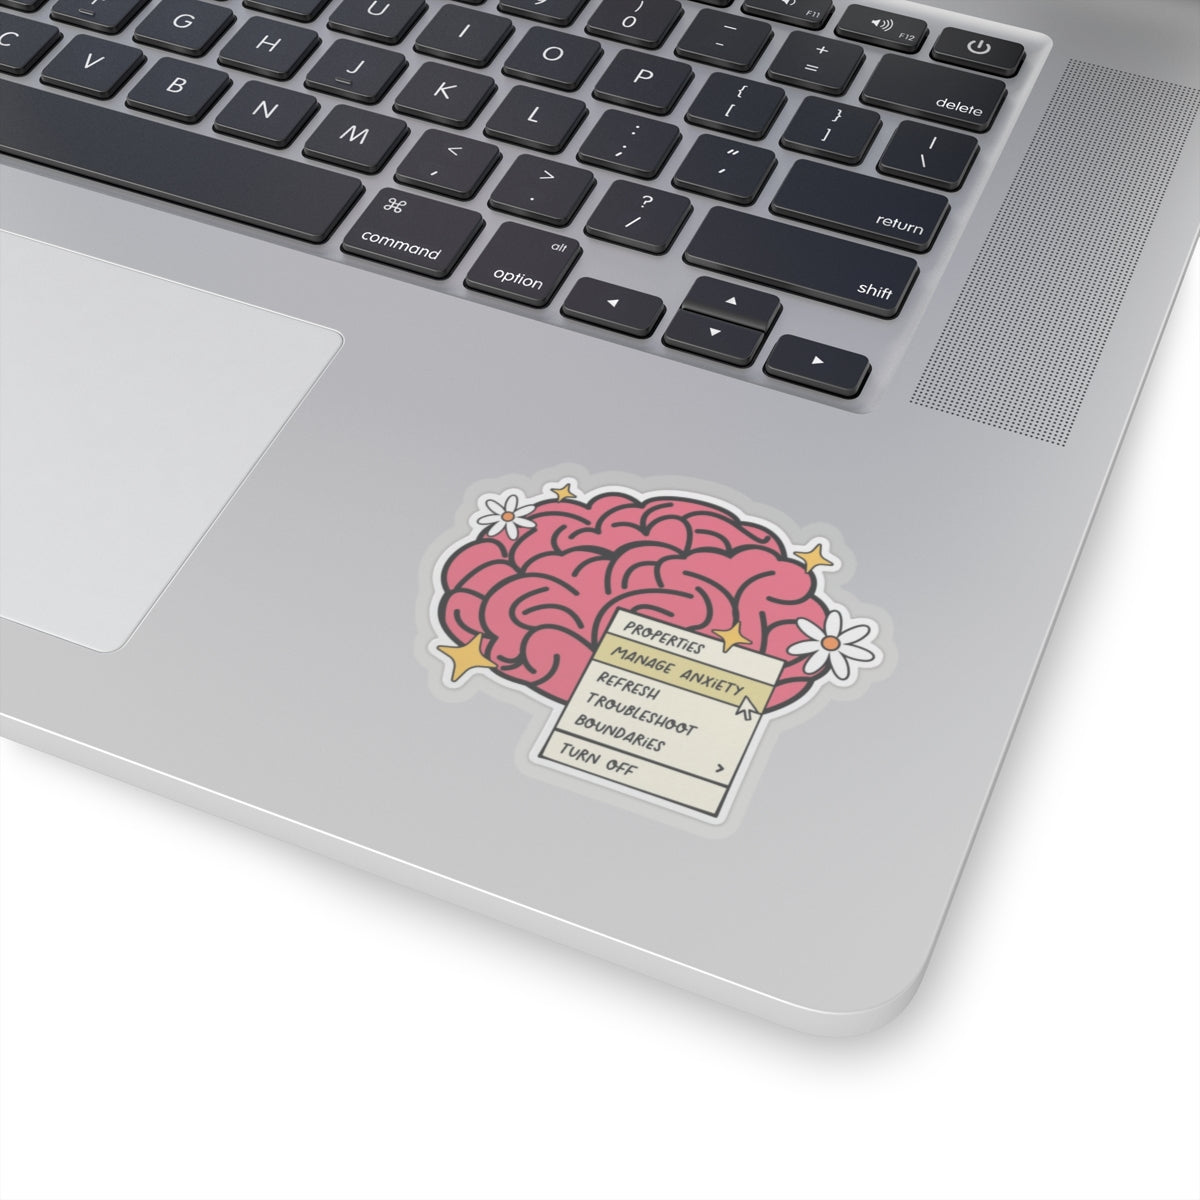 Anxiety brain Sticker